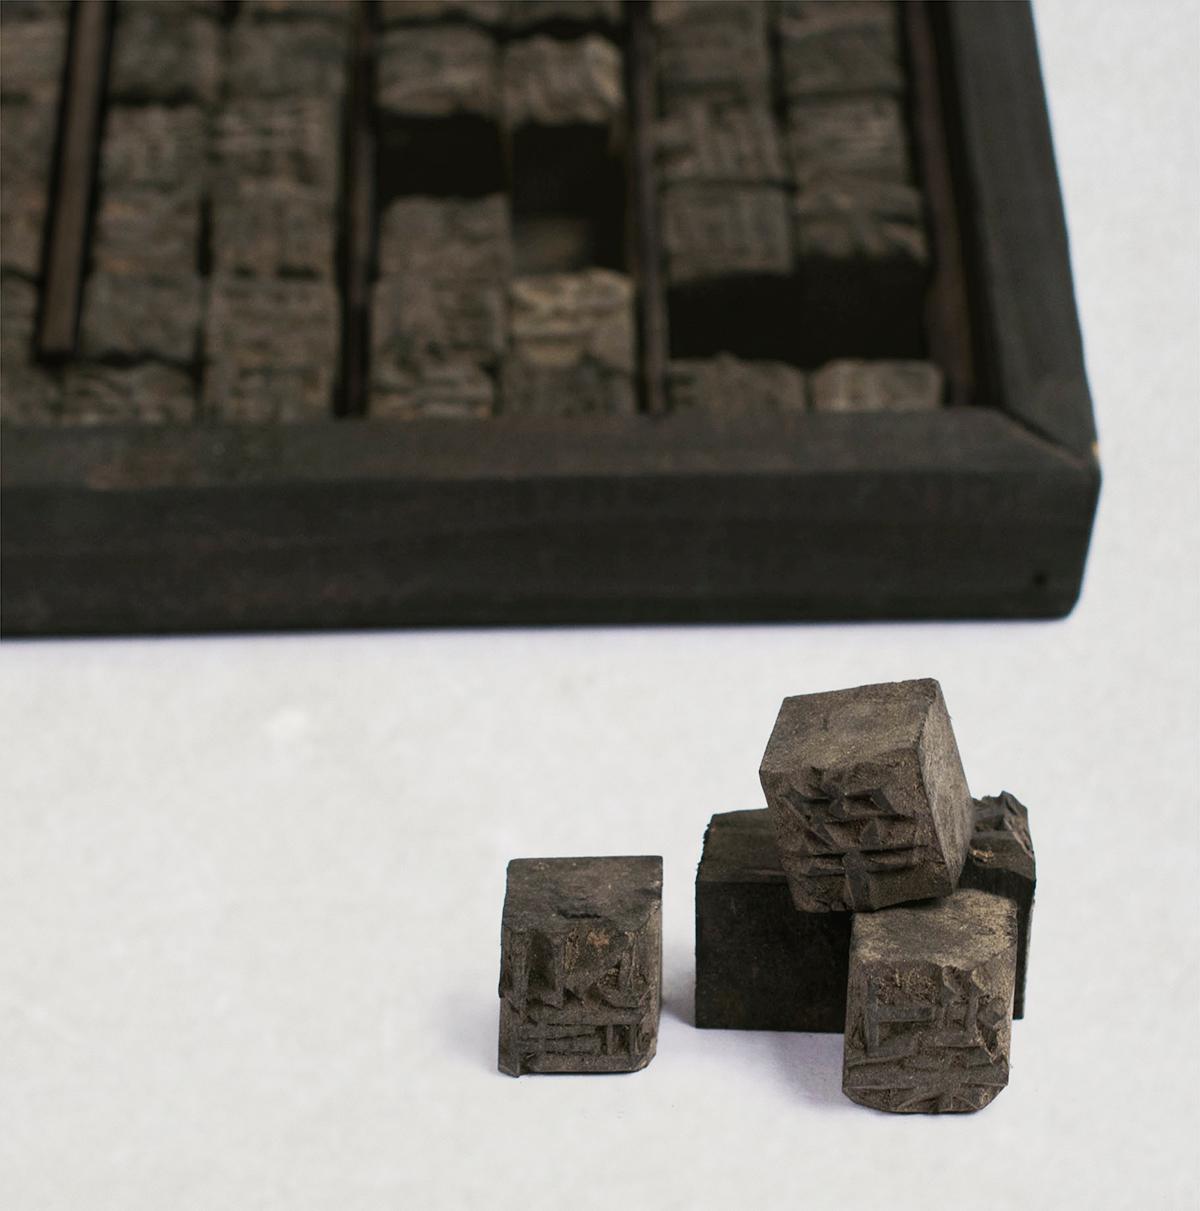 chinese printing blocks